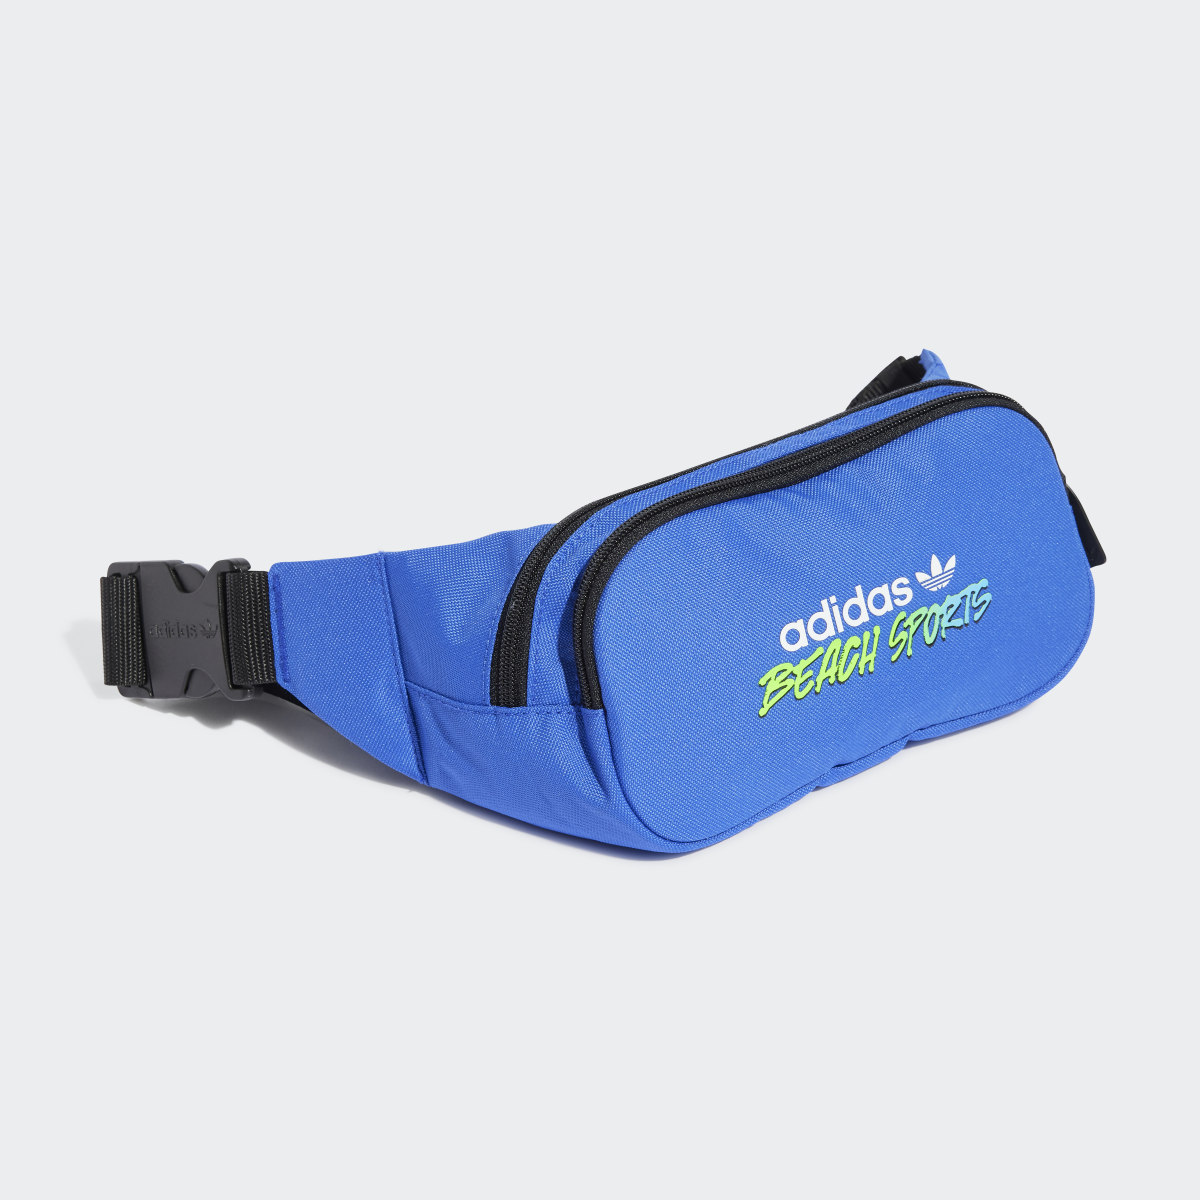 Adidas Beach Sports Waist Bag. 4